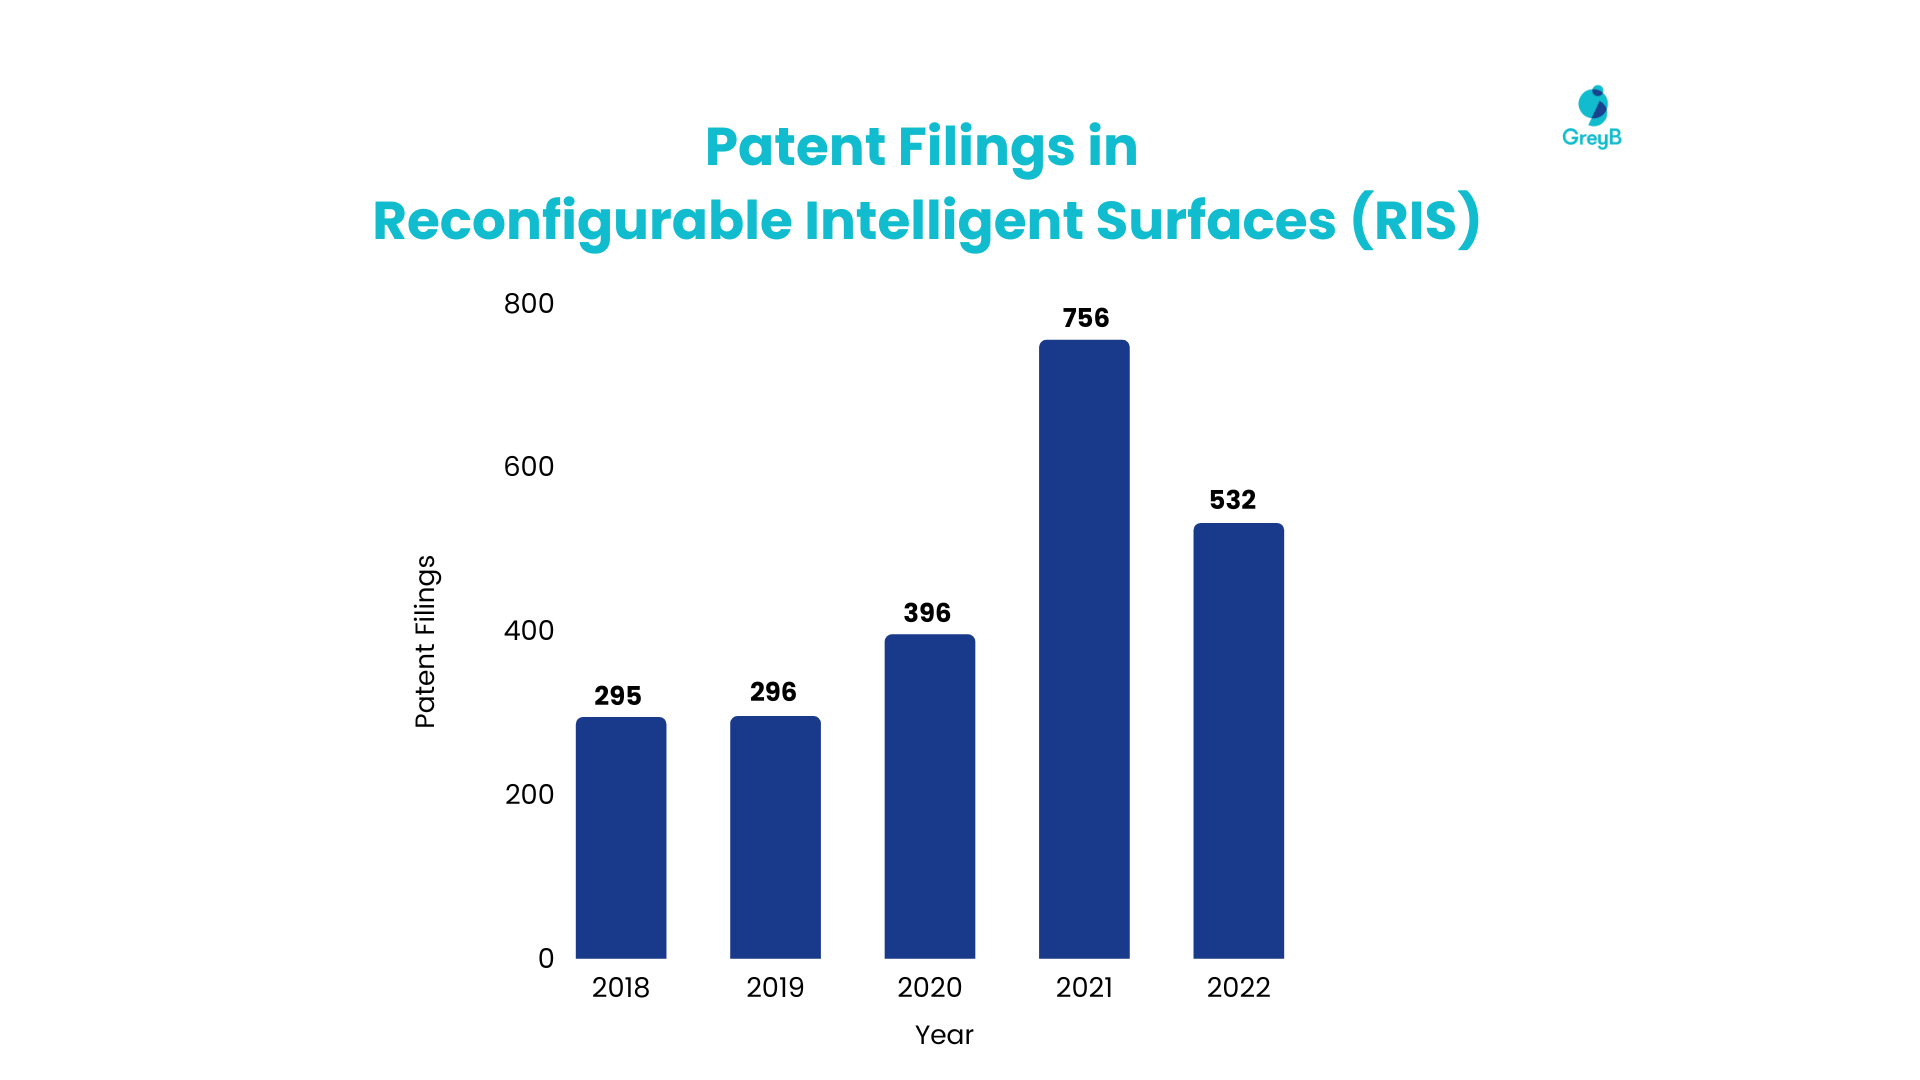 6G Enabling technologies: Patent Filings in RIS